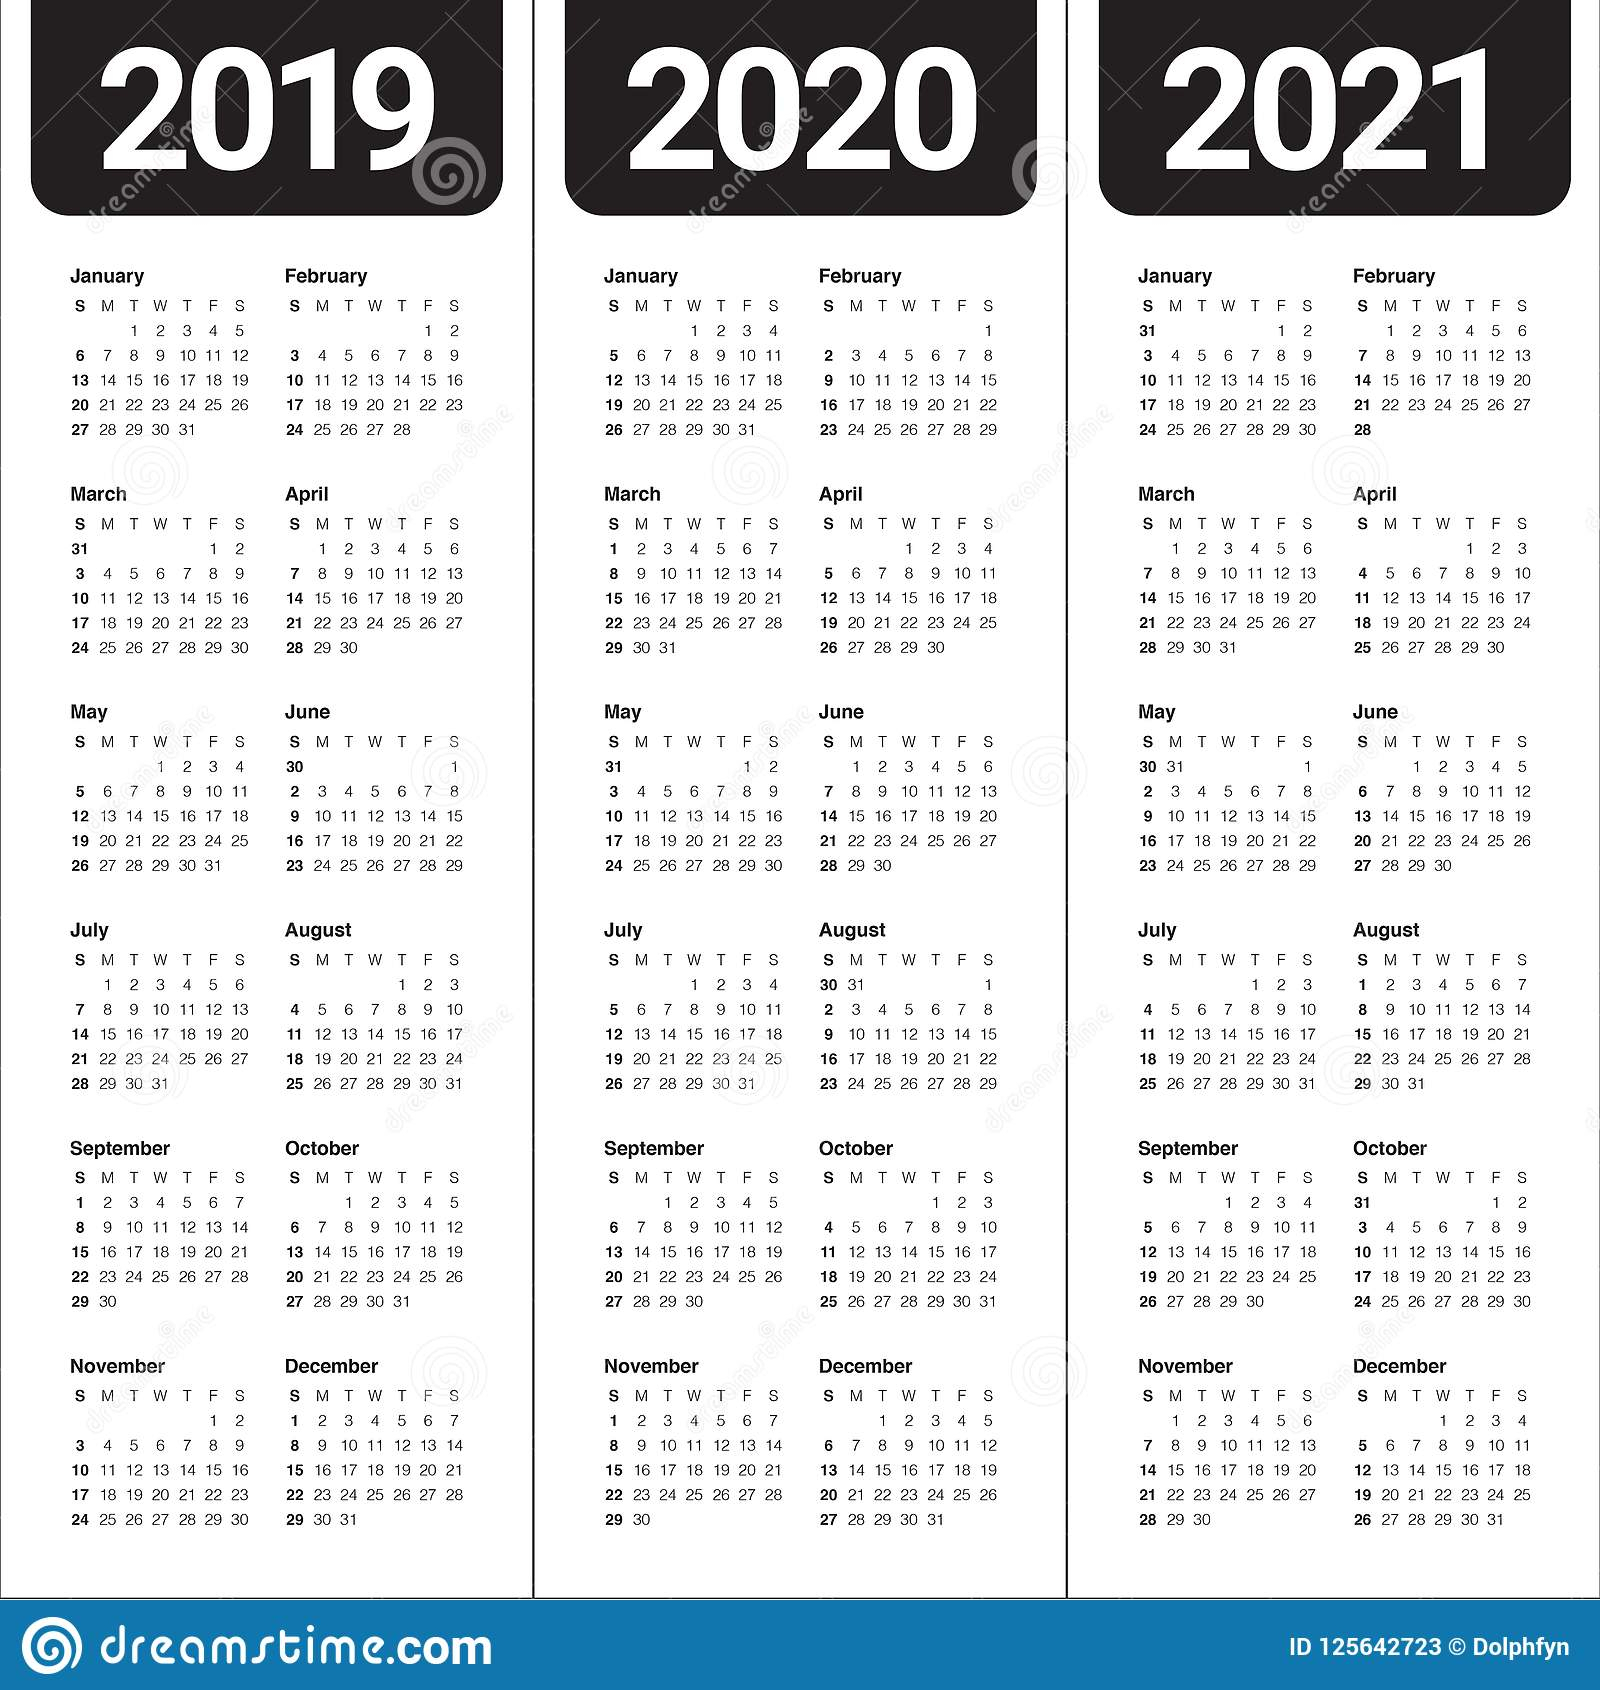 Quadax 2021 Julian Calendar | Calendar For Planning intended for Julian Date Calendar 2021